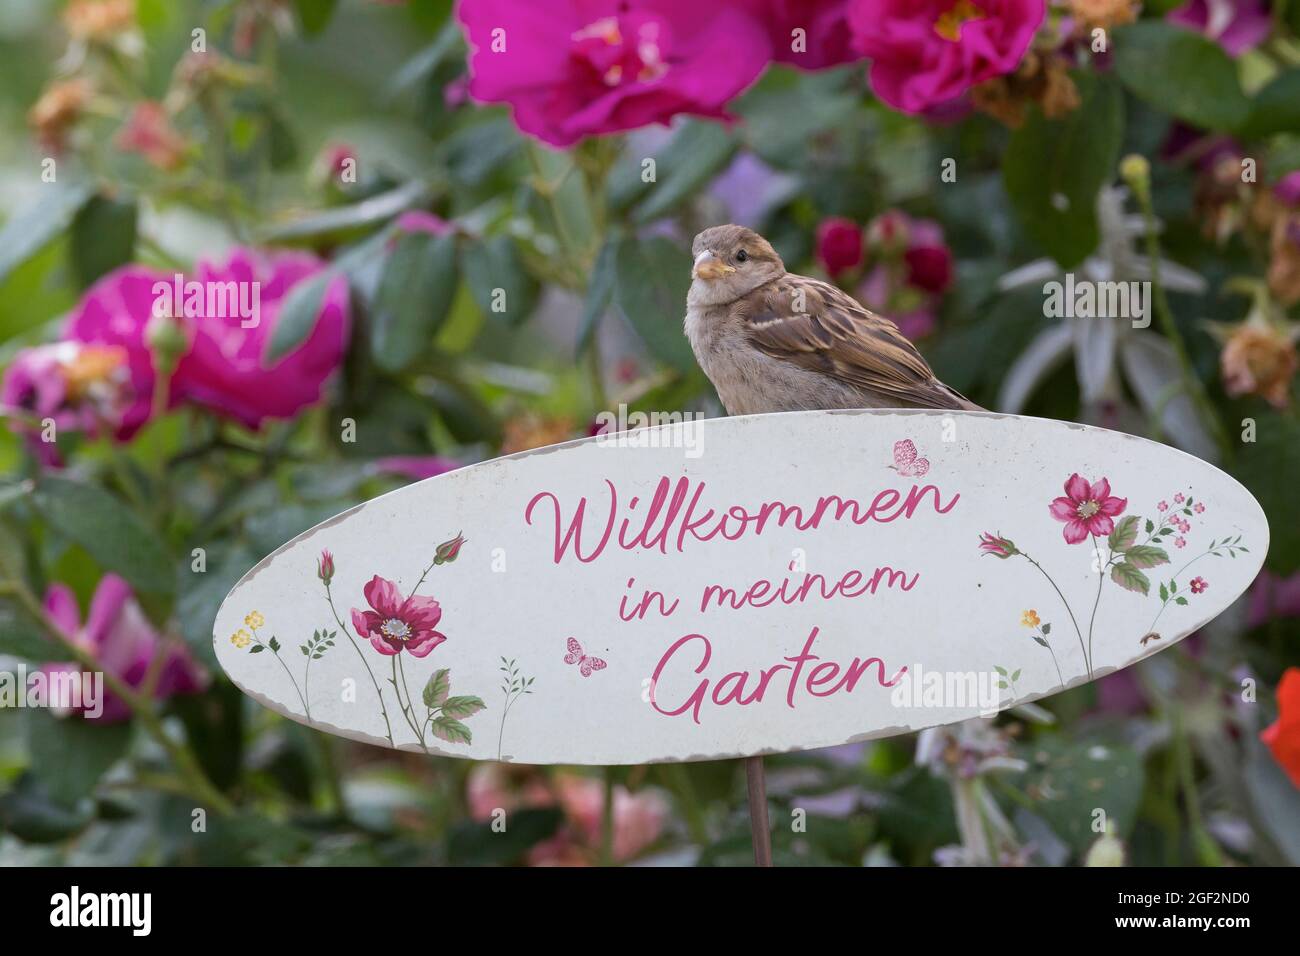 Casa passera (Passer domesticus), giovane uccello seduto su un cartello 'Benvenuti nel mio giardino', Germania Foto Stock